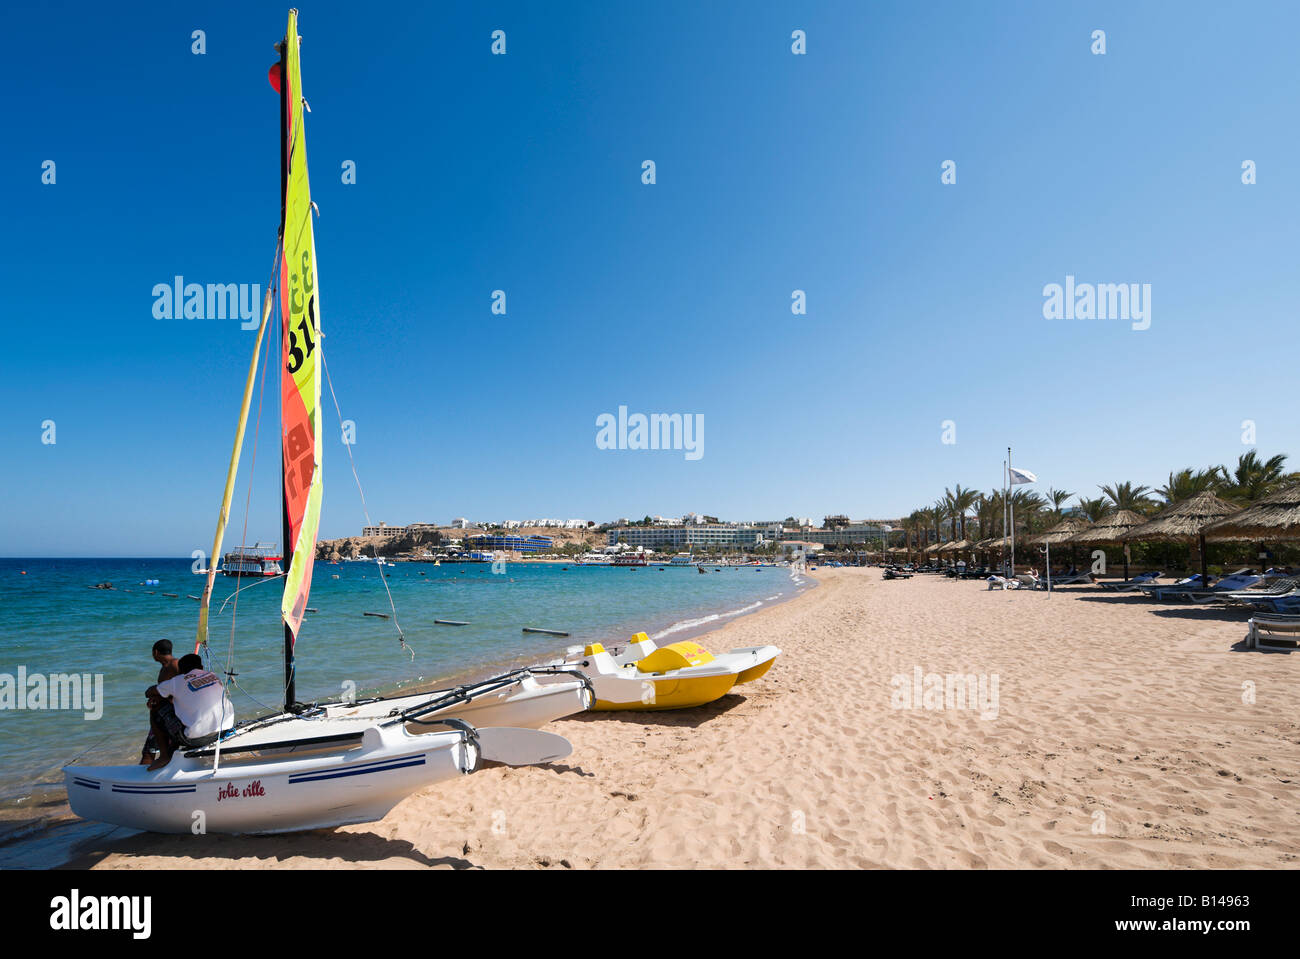 Deportes acuáticos en la playa de la Bahía de Naama, Sharm el-Sheikh, en la costa del Mar Rojo, al sur del Sinaí, Egipto Foto de stock